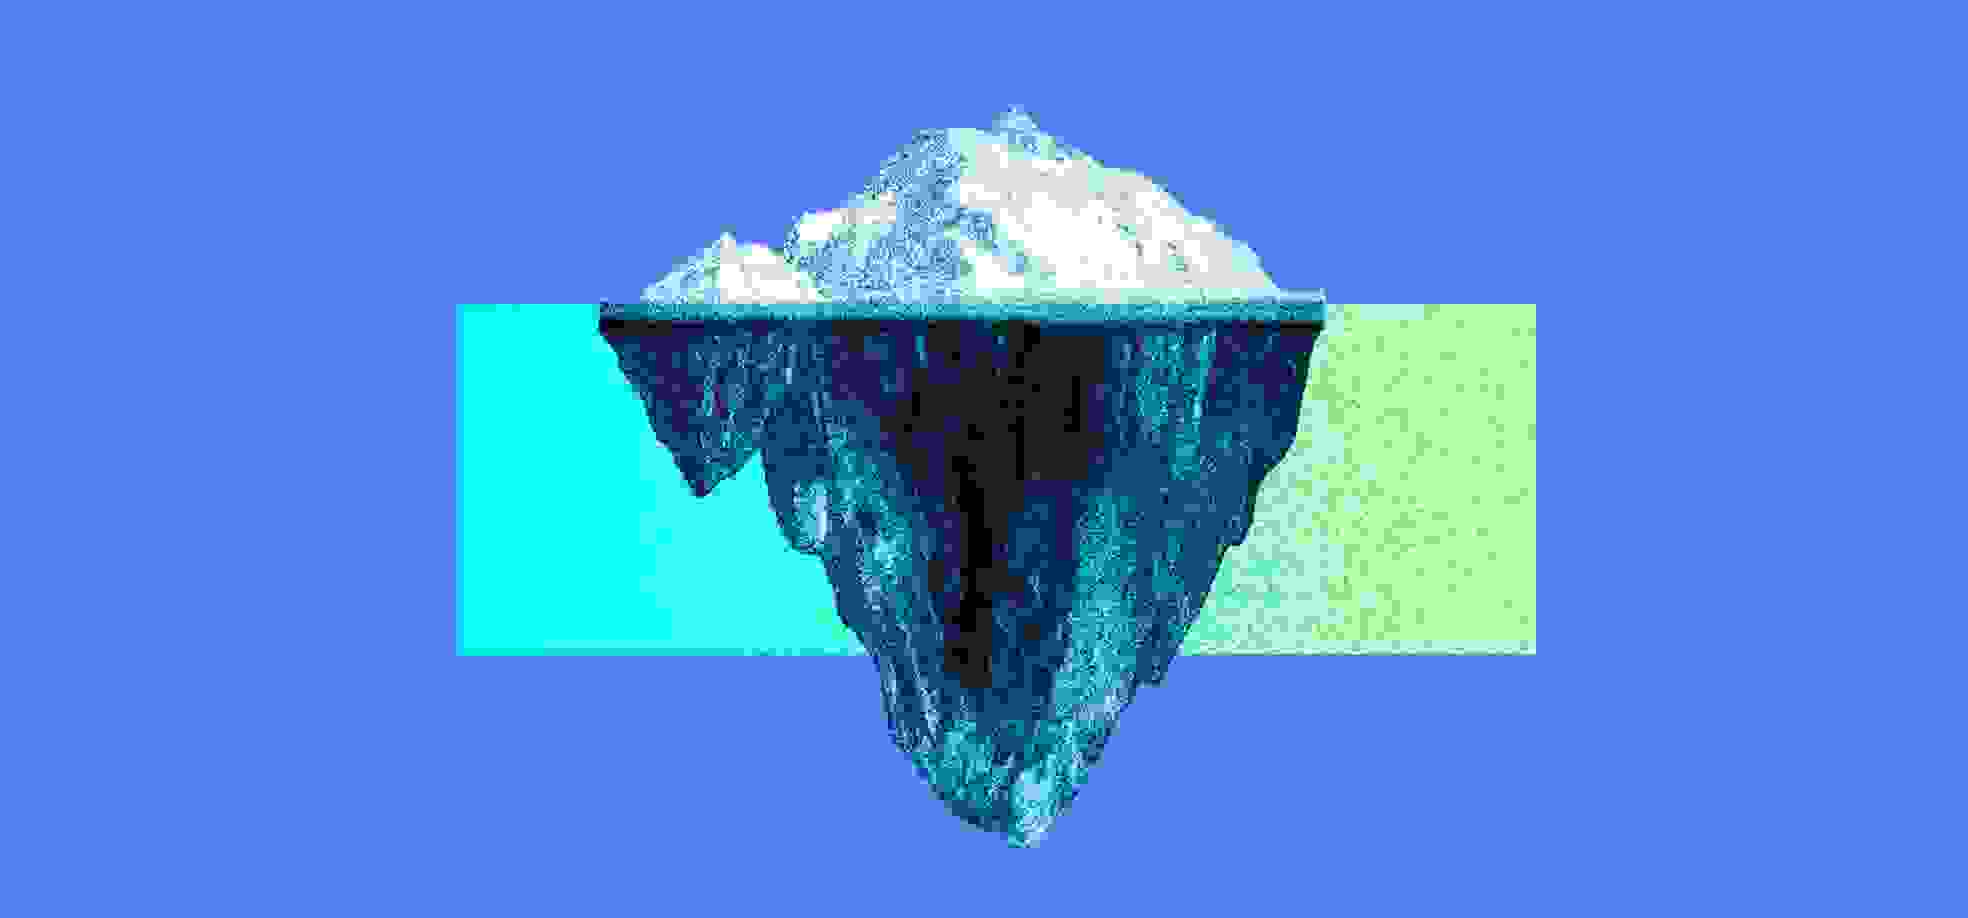 Iceberg sobre el fondo azul